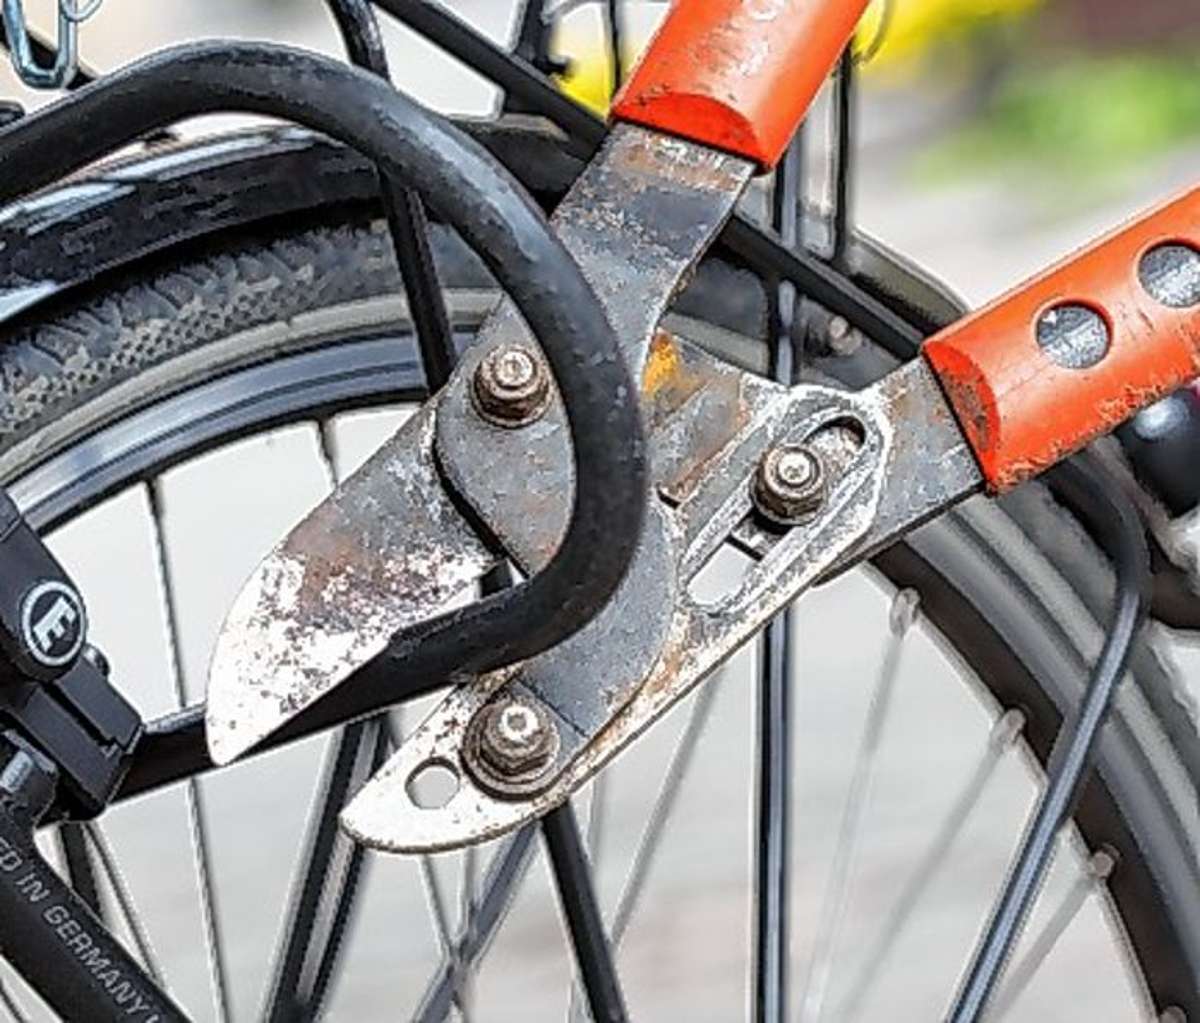 Rheinfelden : E-Bike von Firmengelände gestohlen